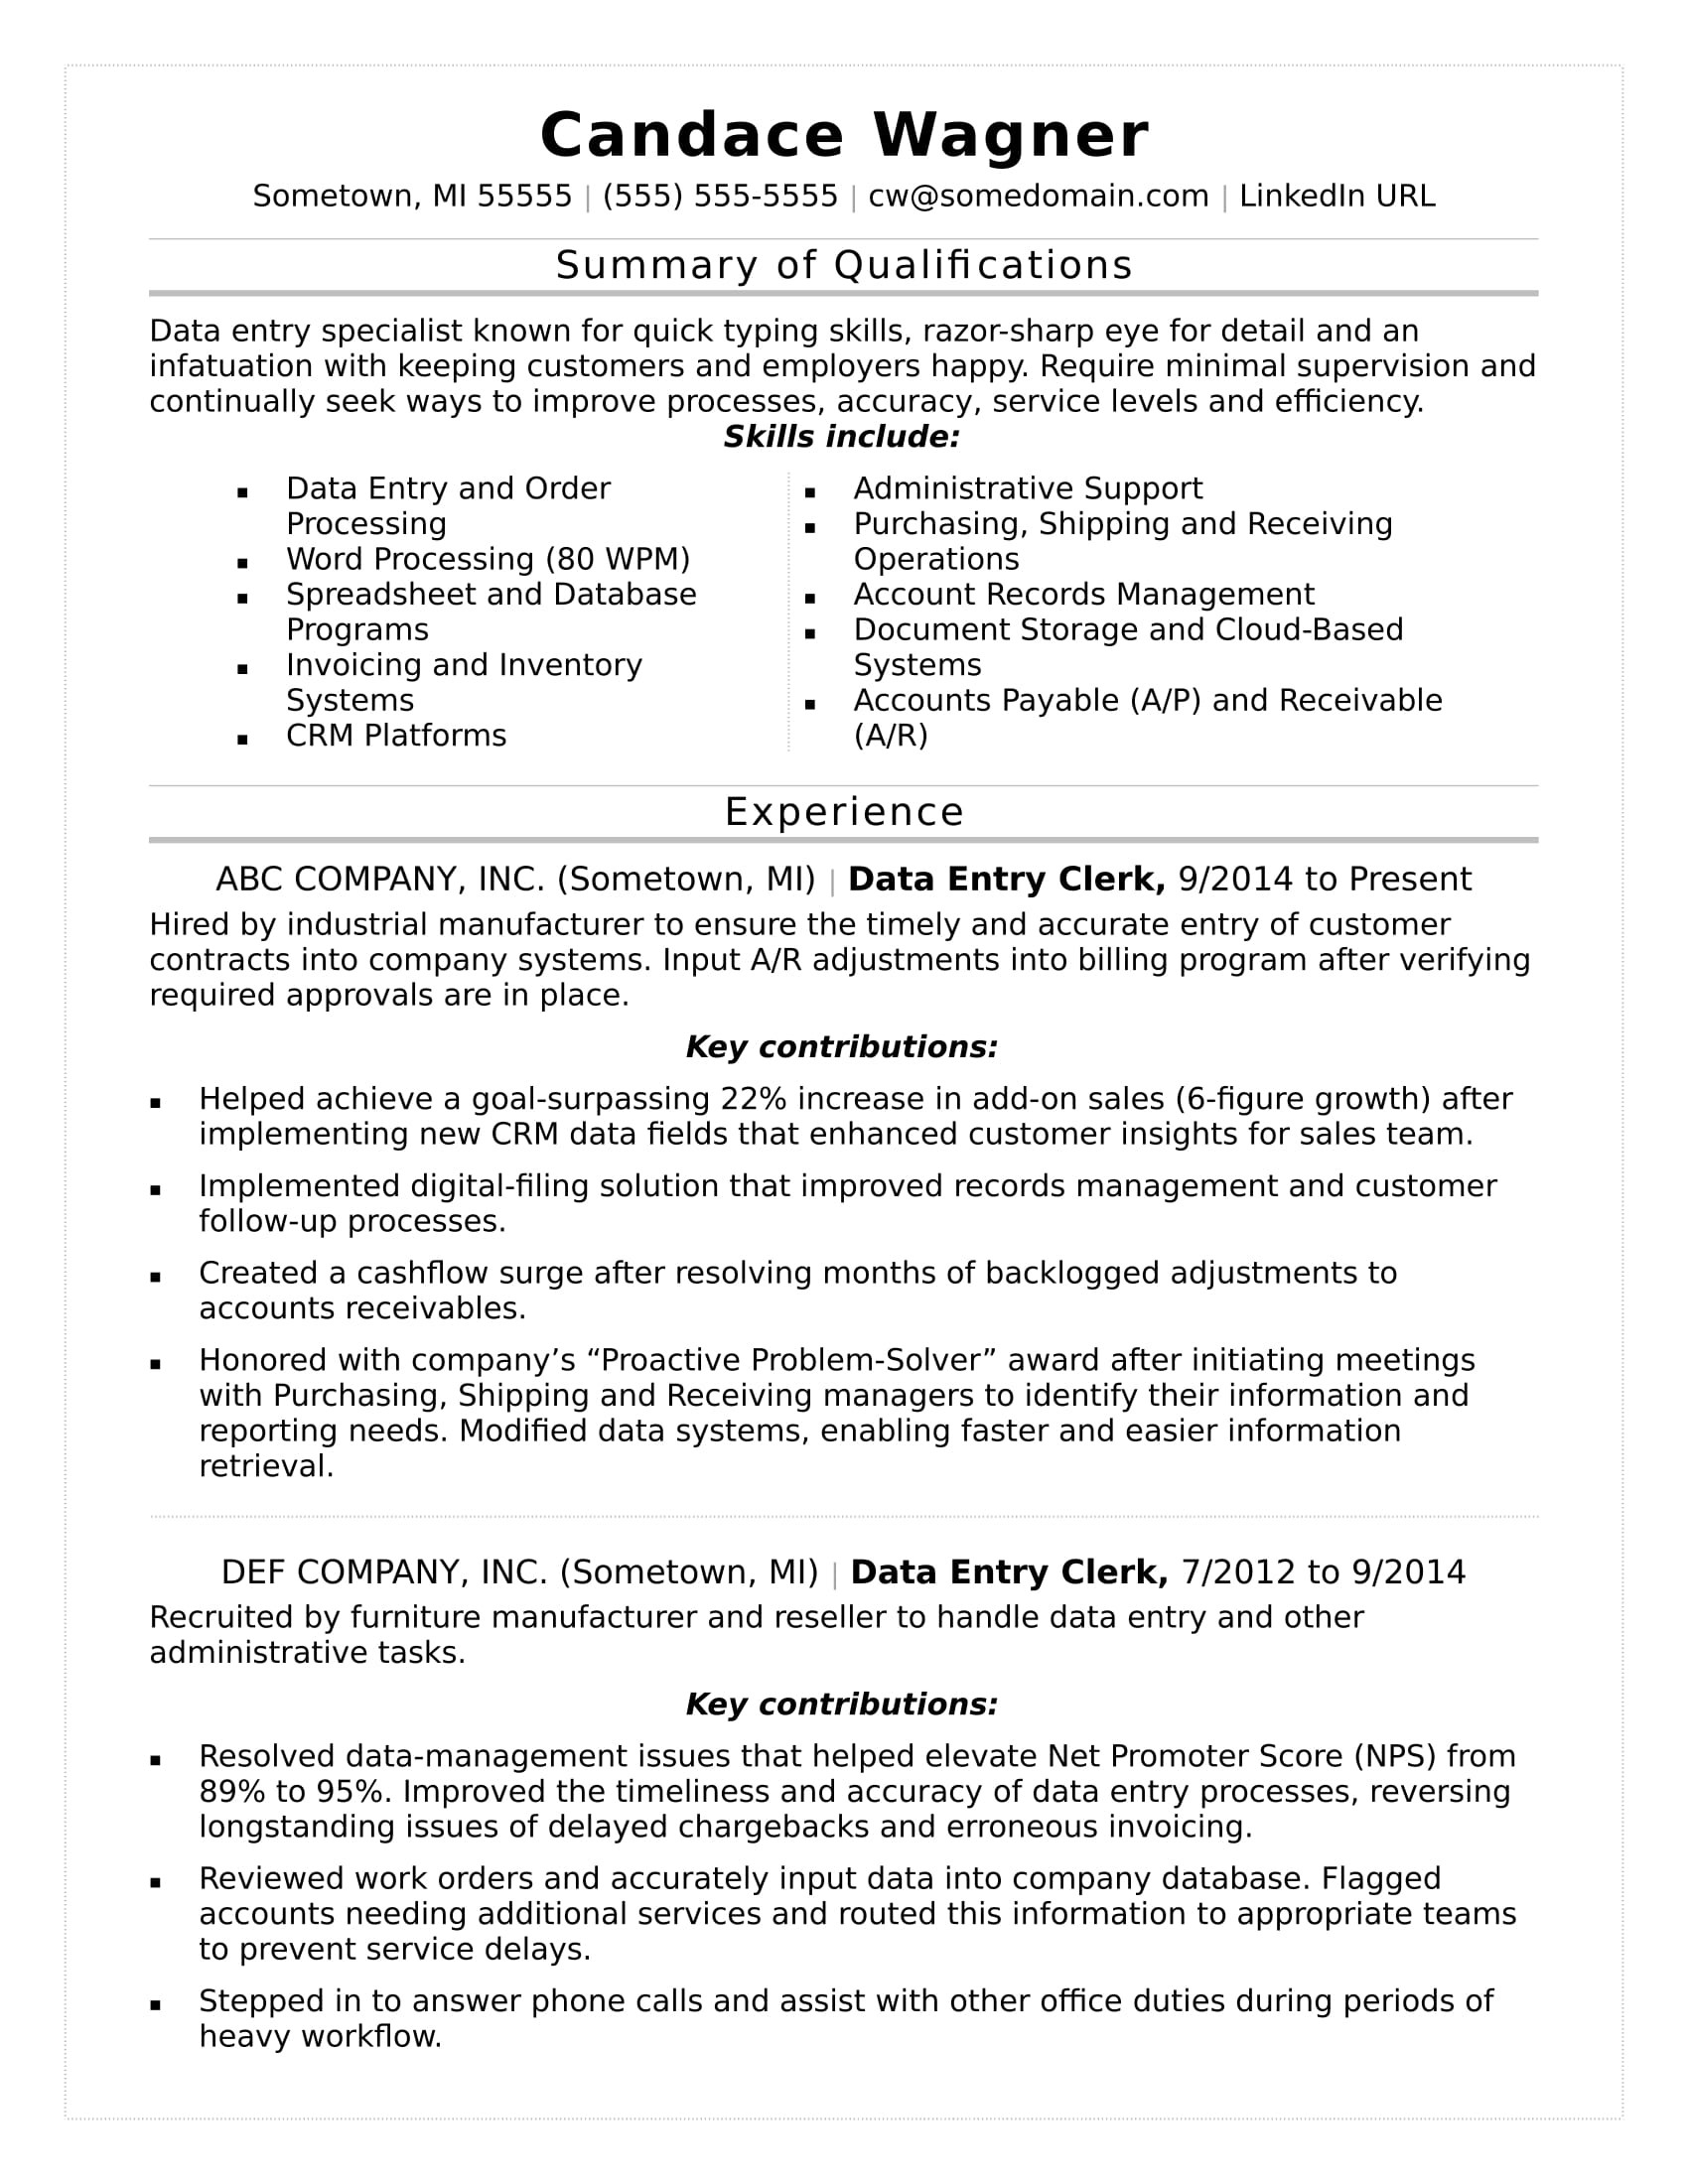 Sample Resume for Data Entry Position Data Entry Resume Sample Monster.com